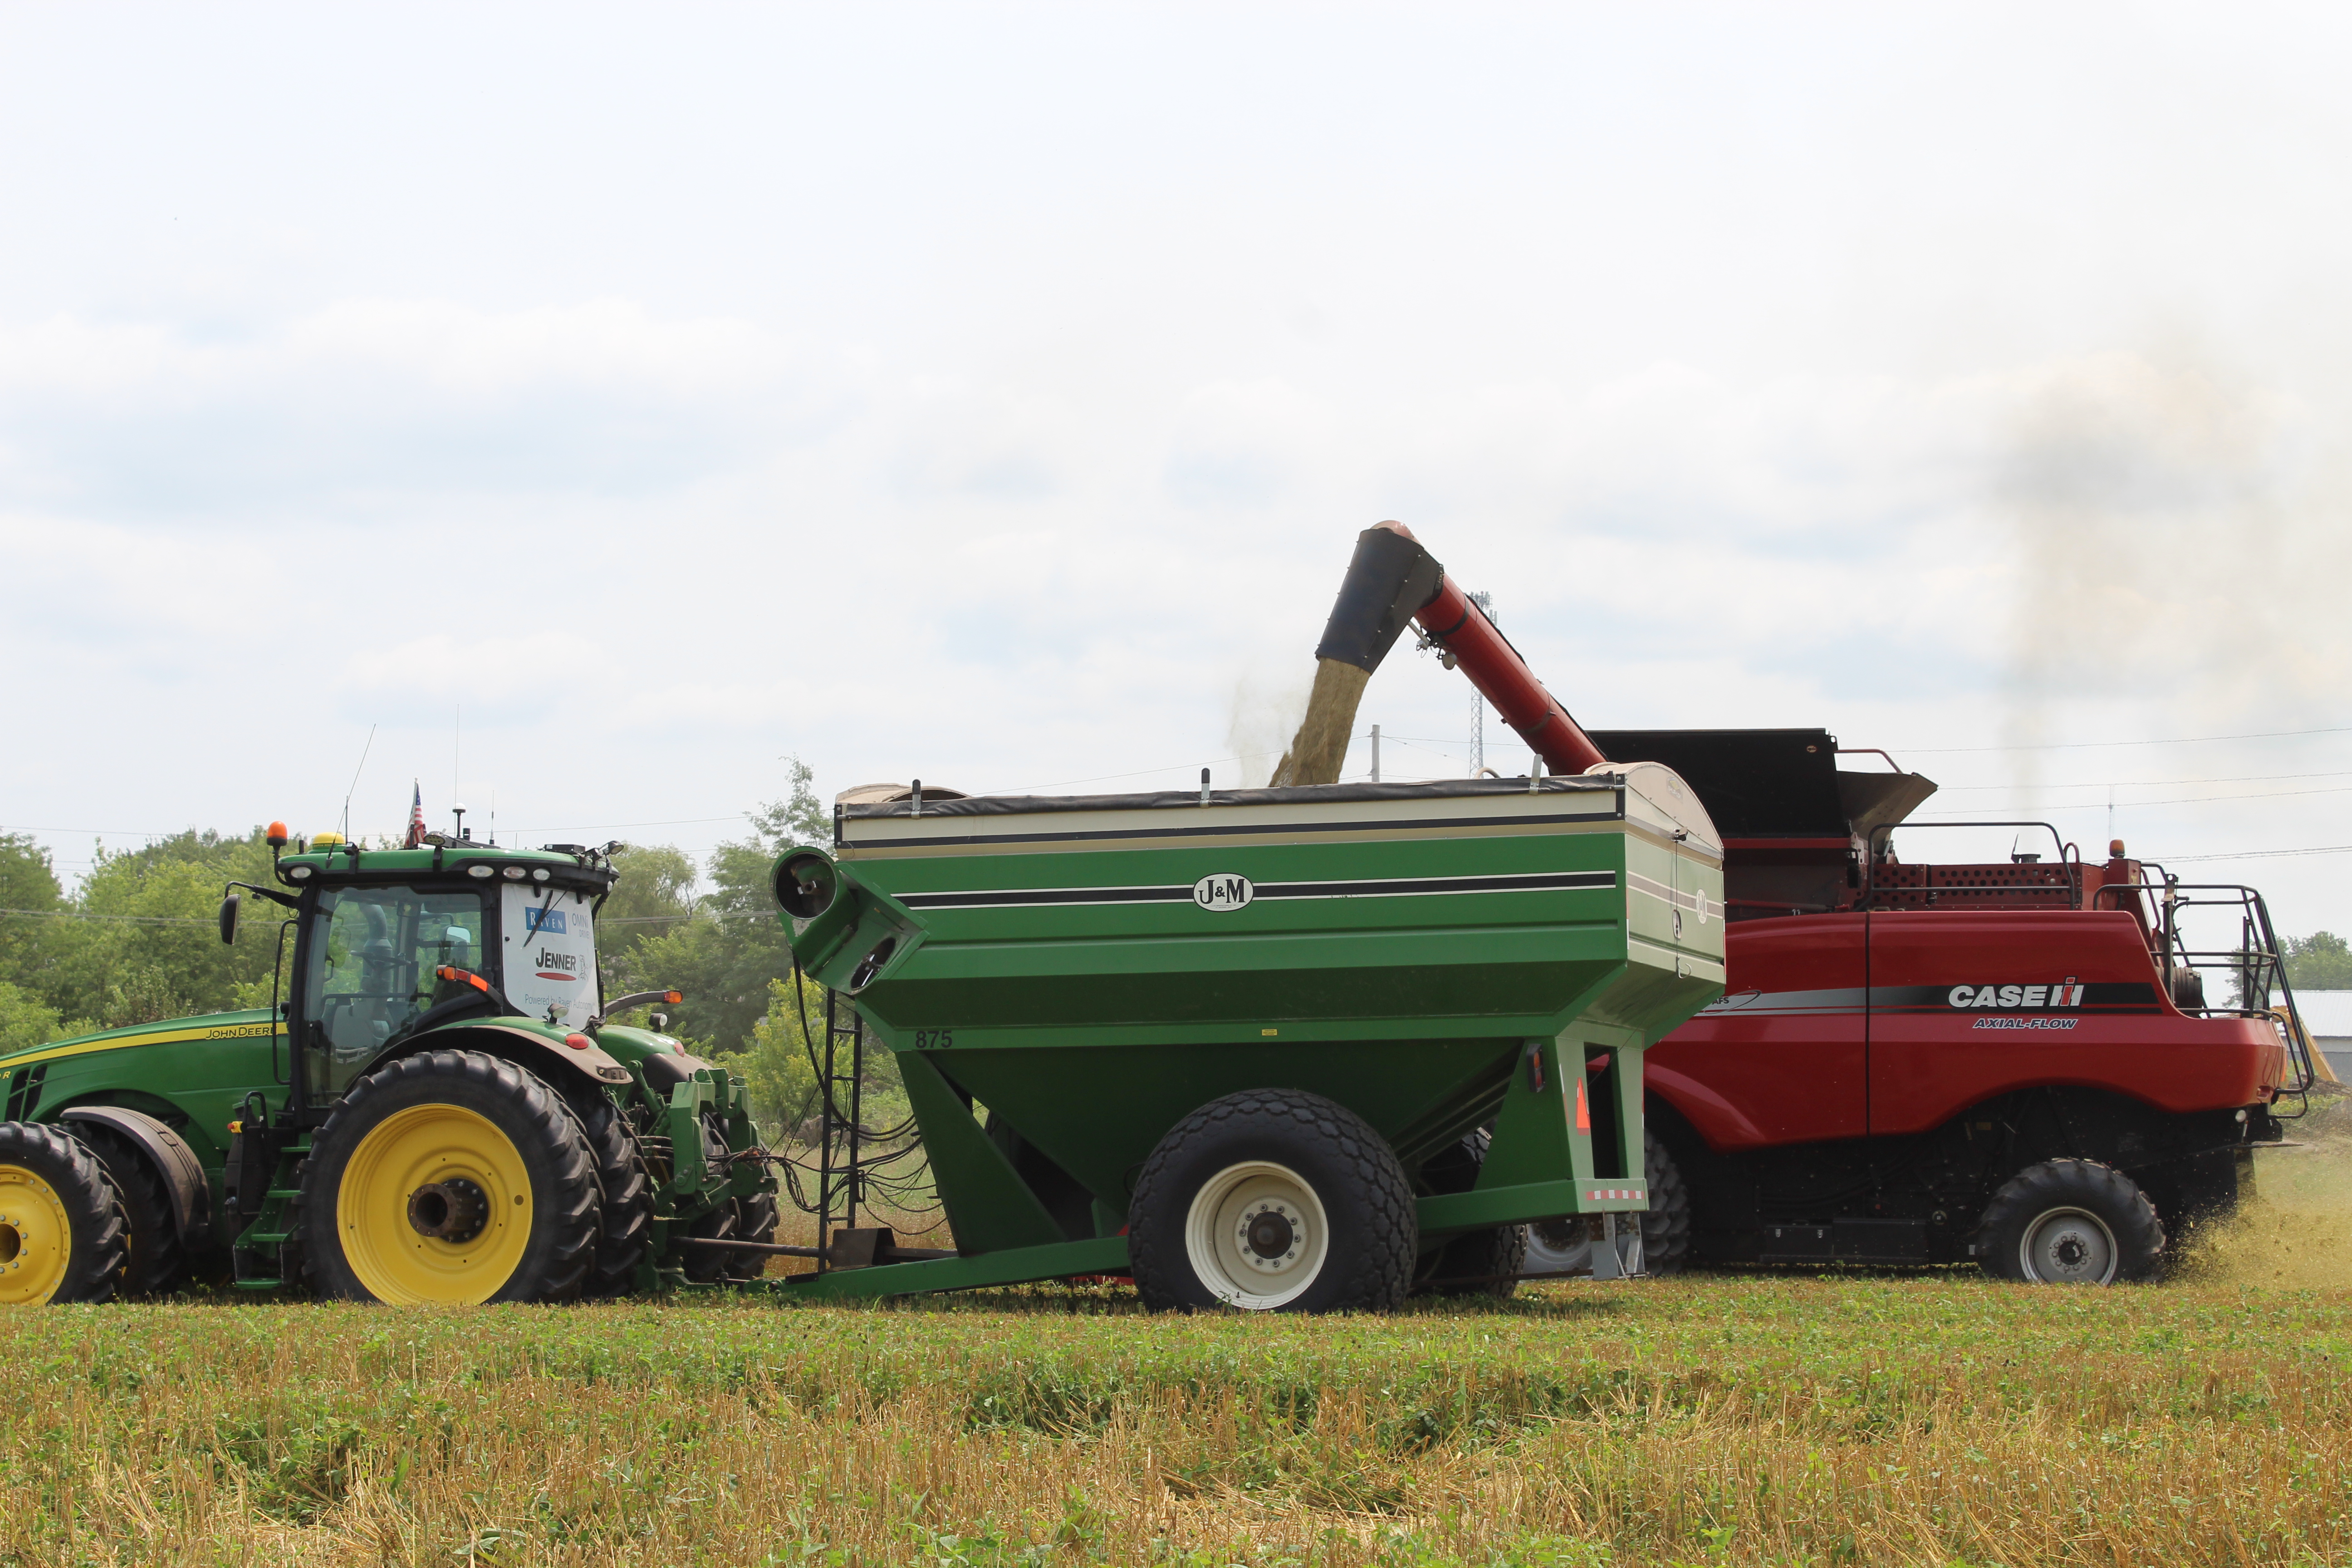 Farming Tractor Simulator 2023 : Drive Combine & Trucks